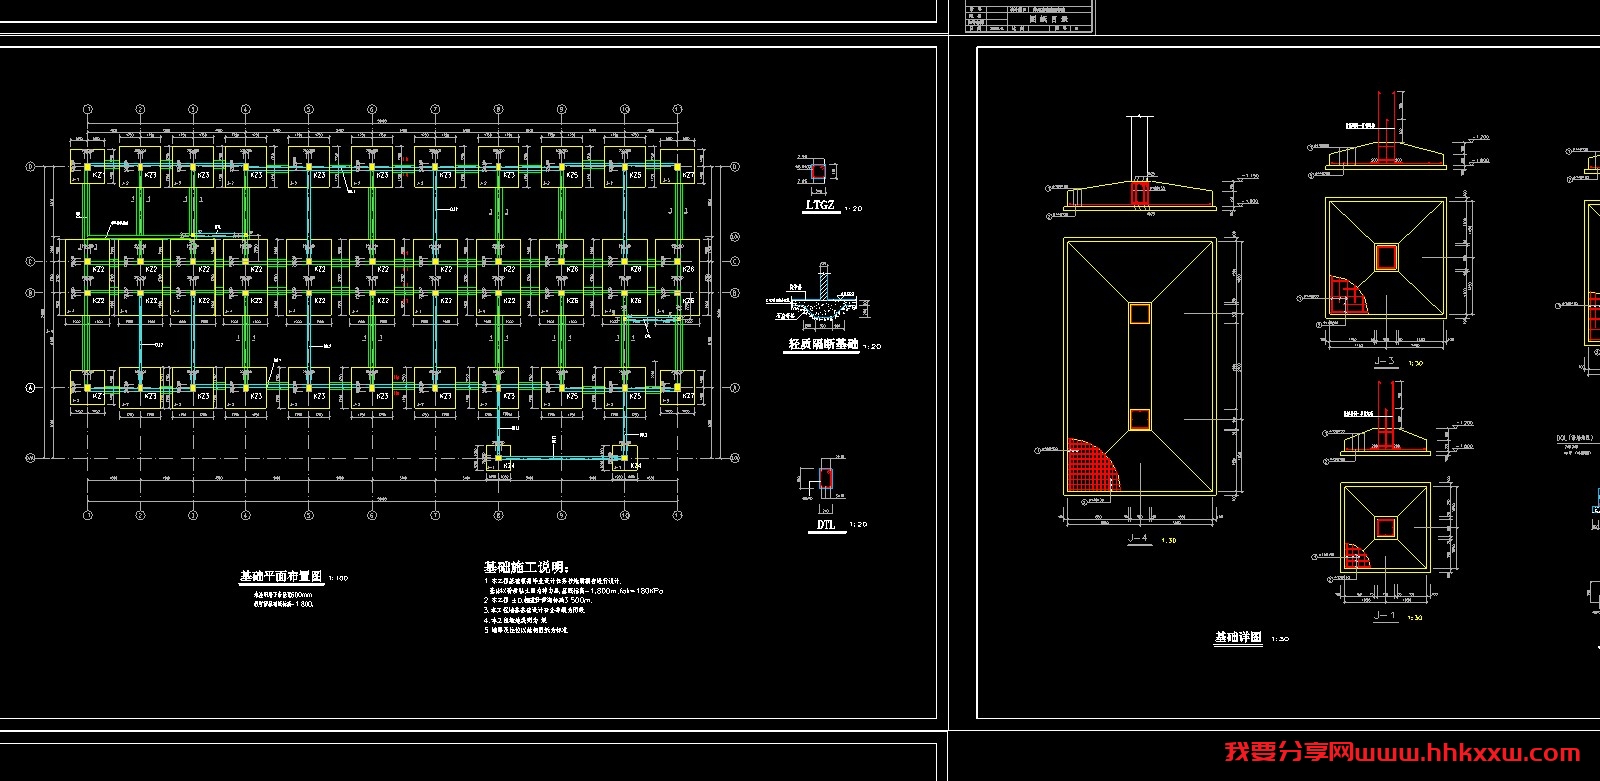 6244.52平米，局部五层辅助教学楼（计算书、建筑、结构图）/格式dwg参考AutoCAD